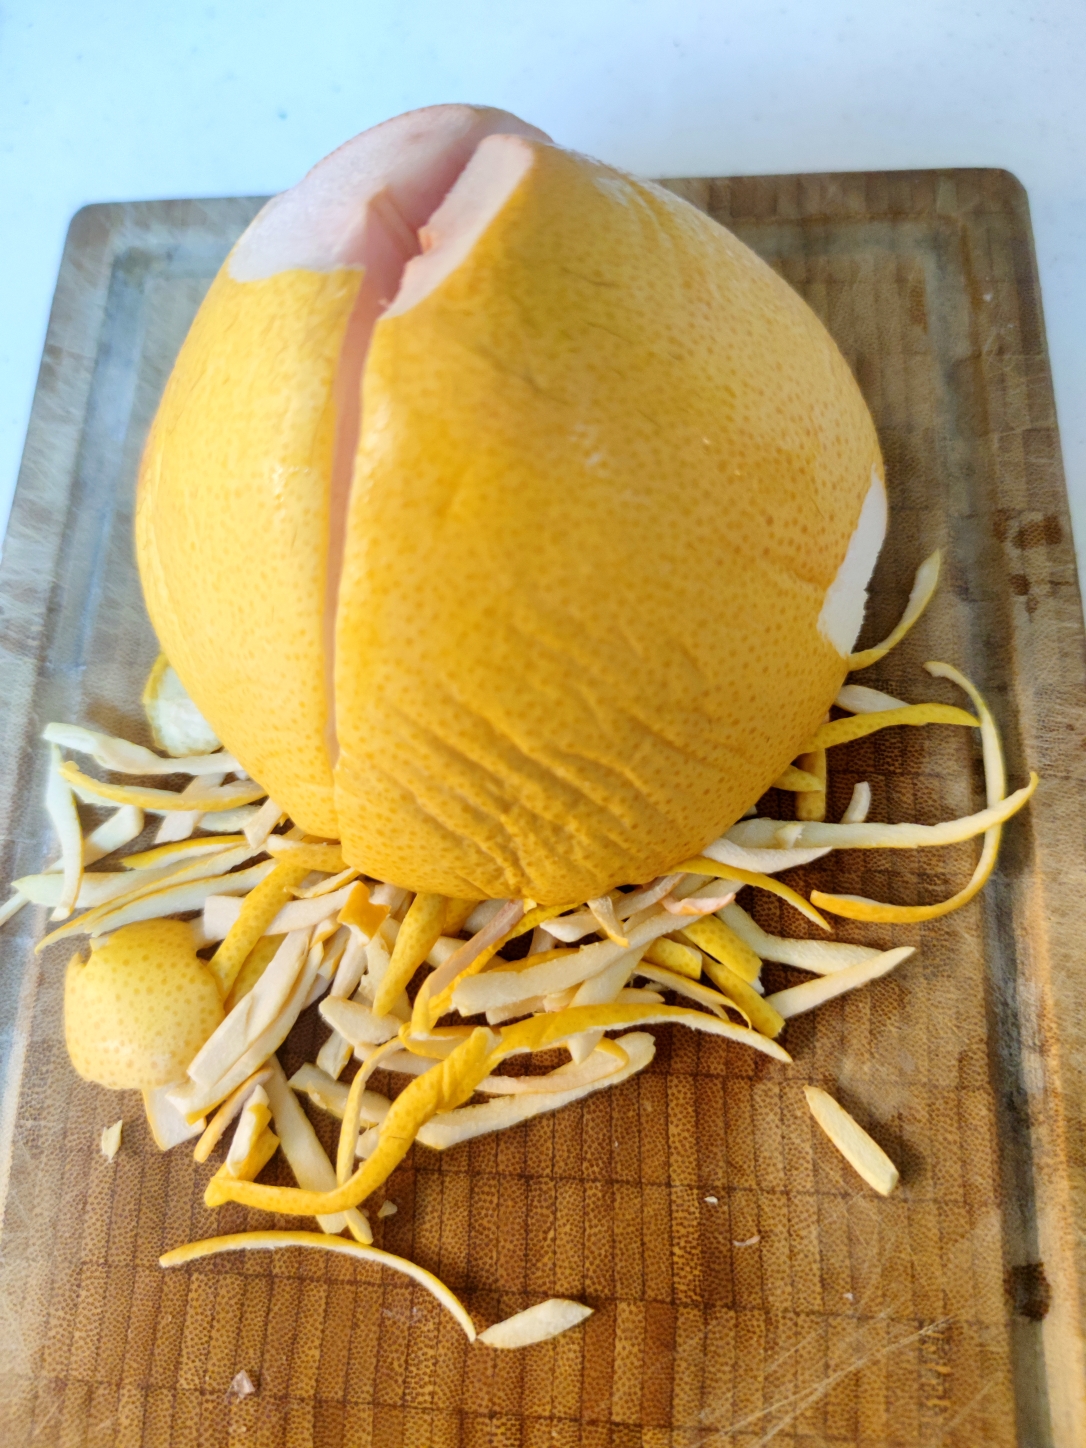 干燥冬季里好吃的润喉柚子皮糖的做法步骤图 大尾巴龙爱美食 下厨房